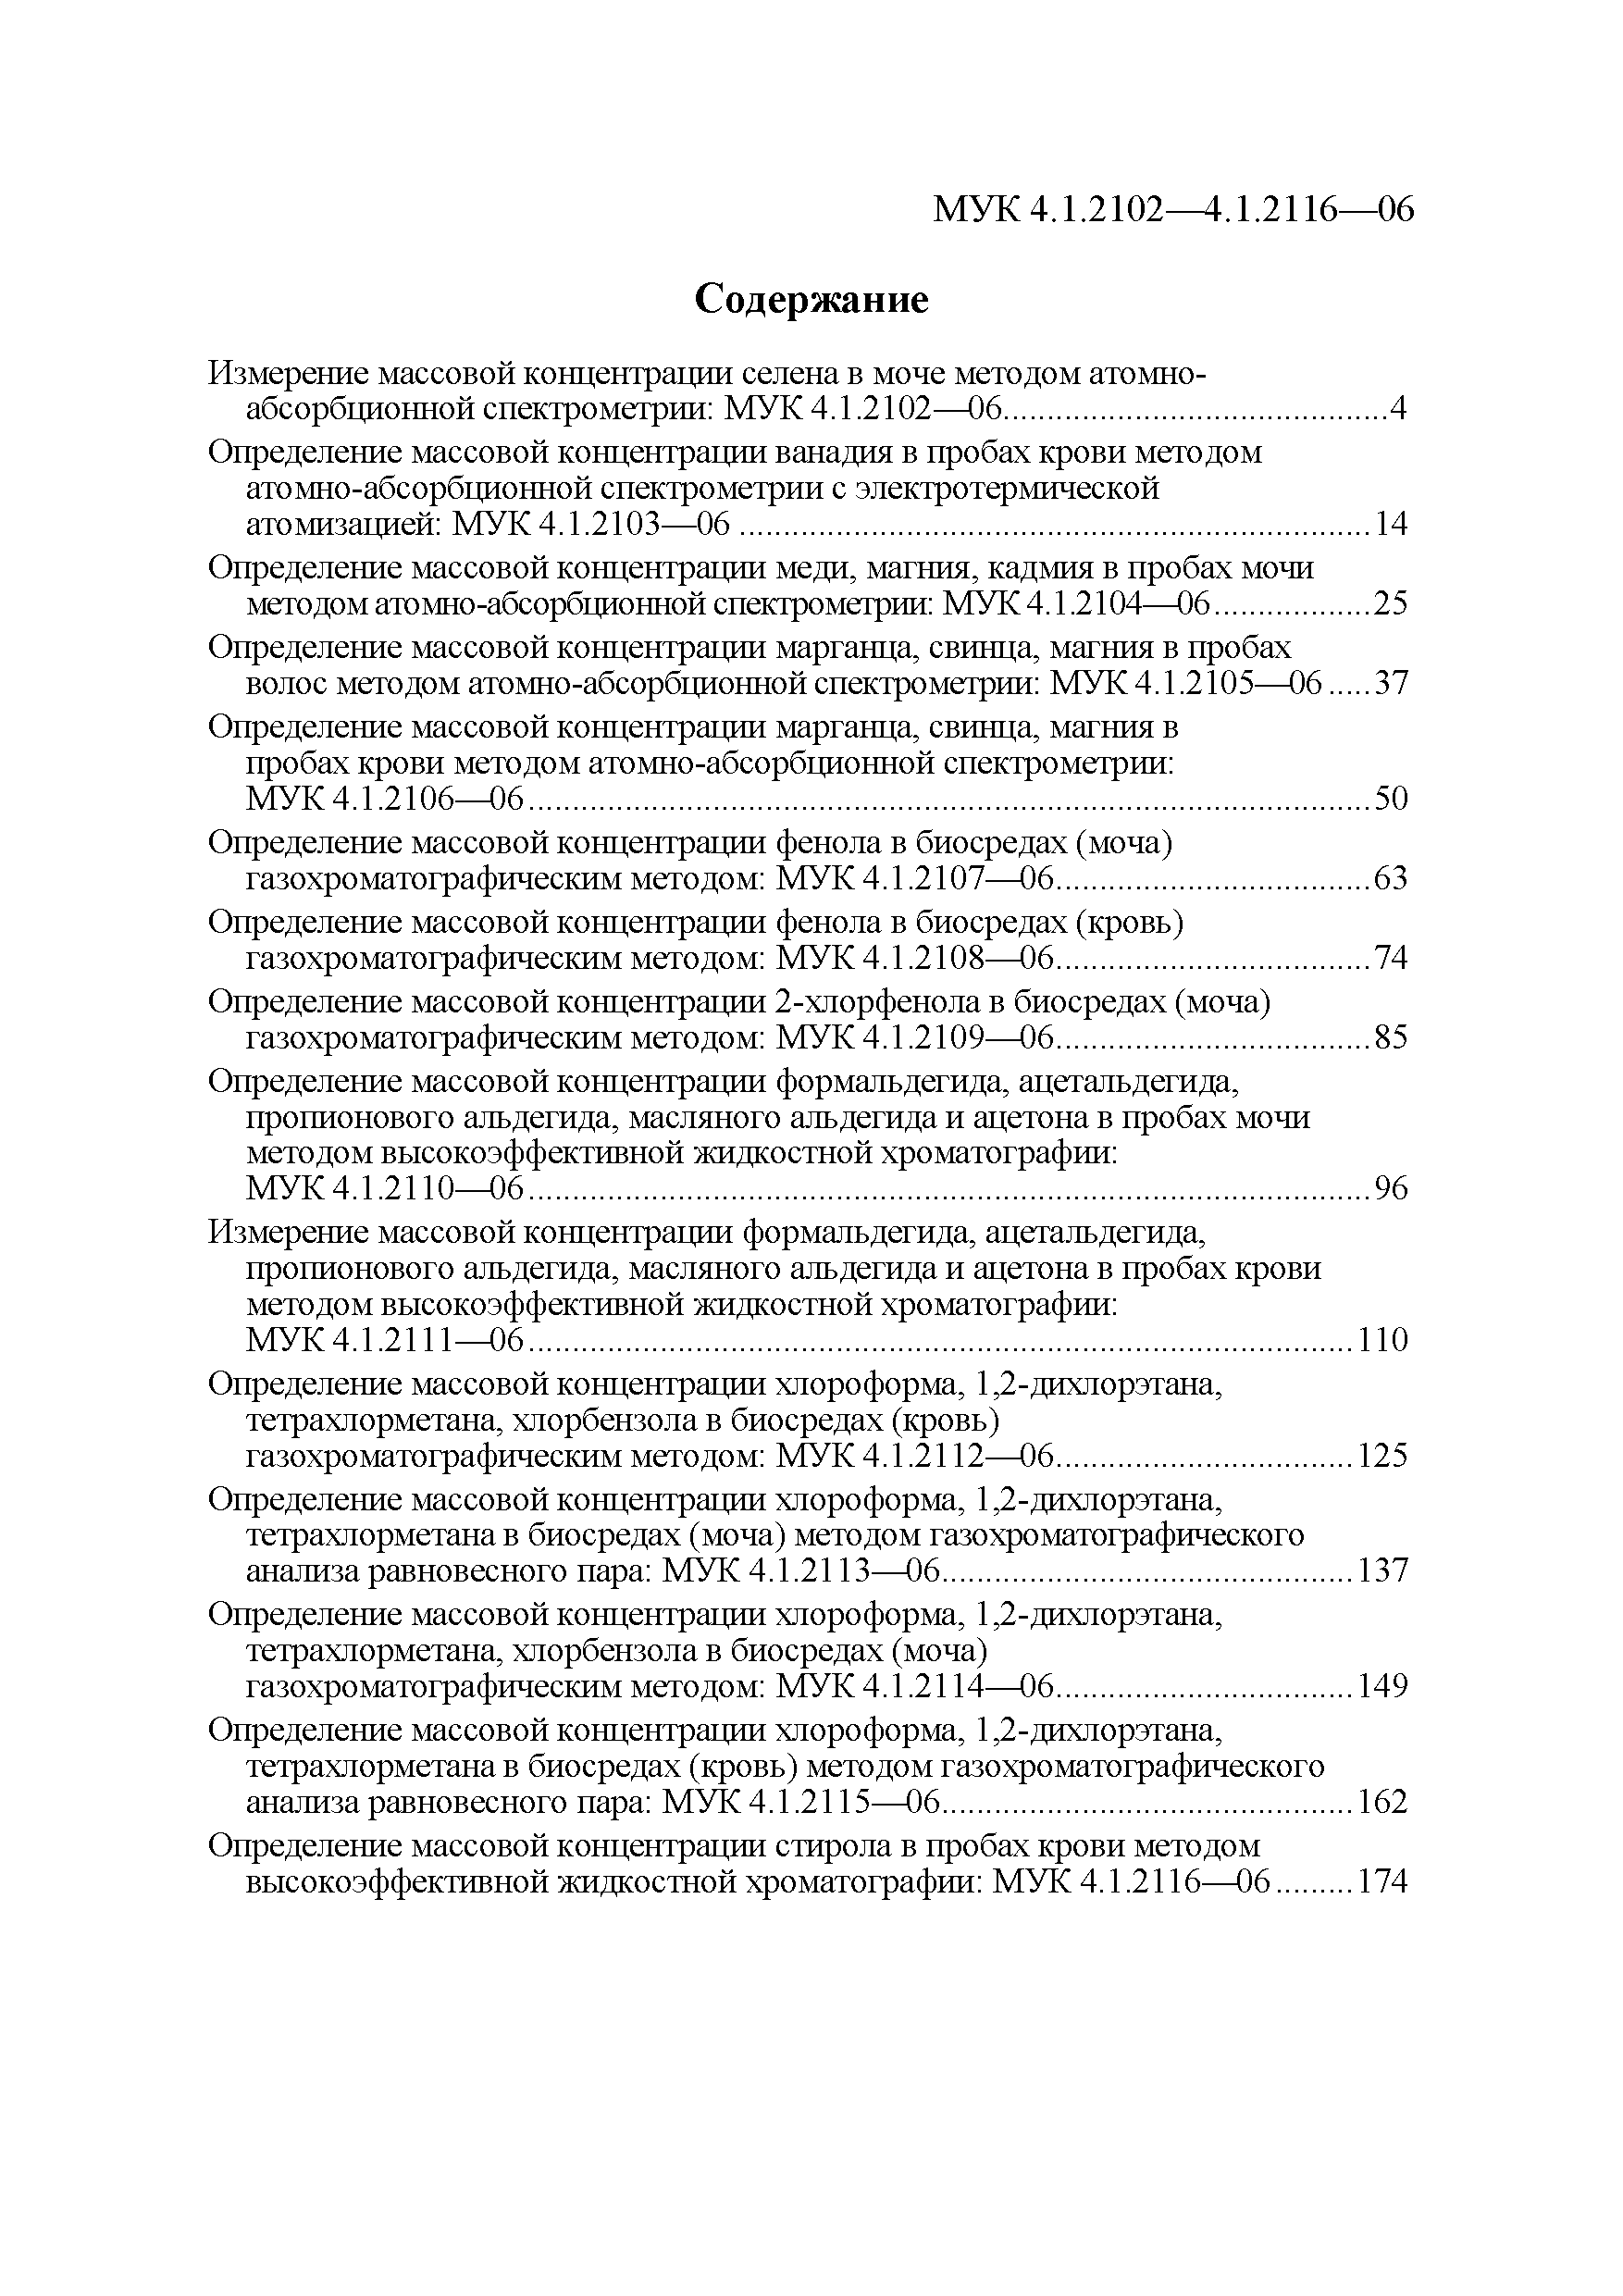 МУК 4.1.2105-06